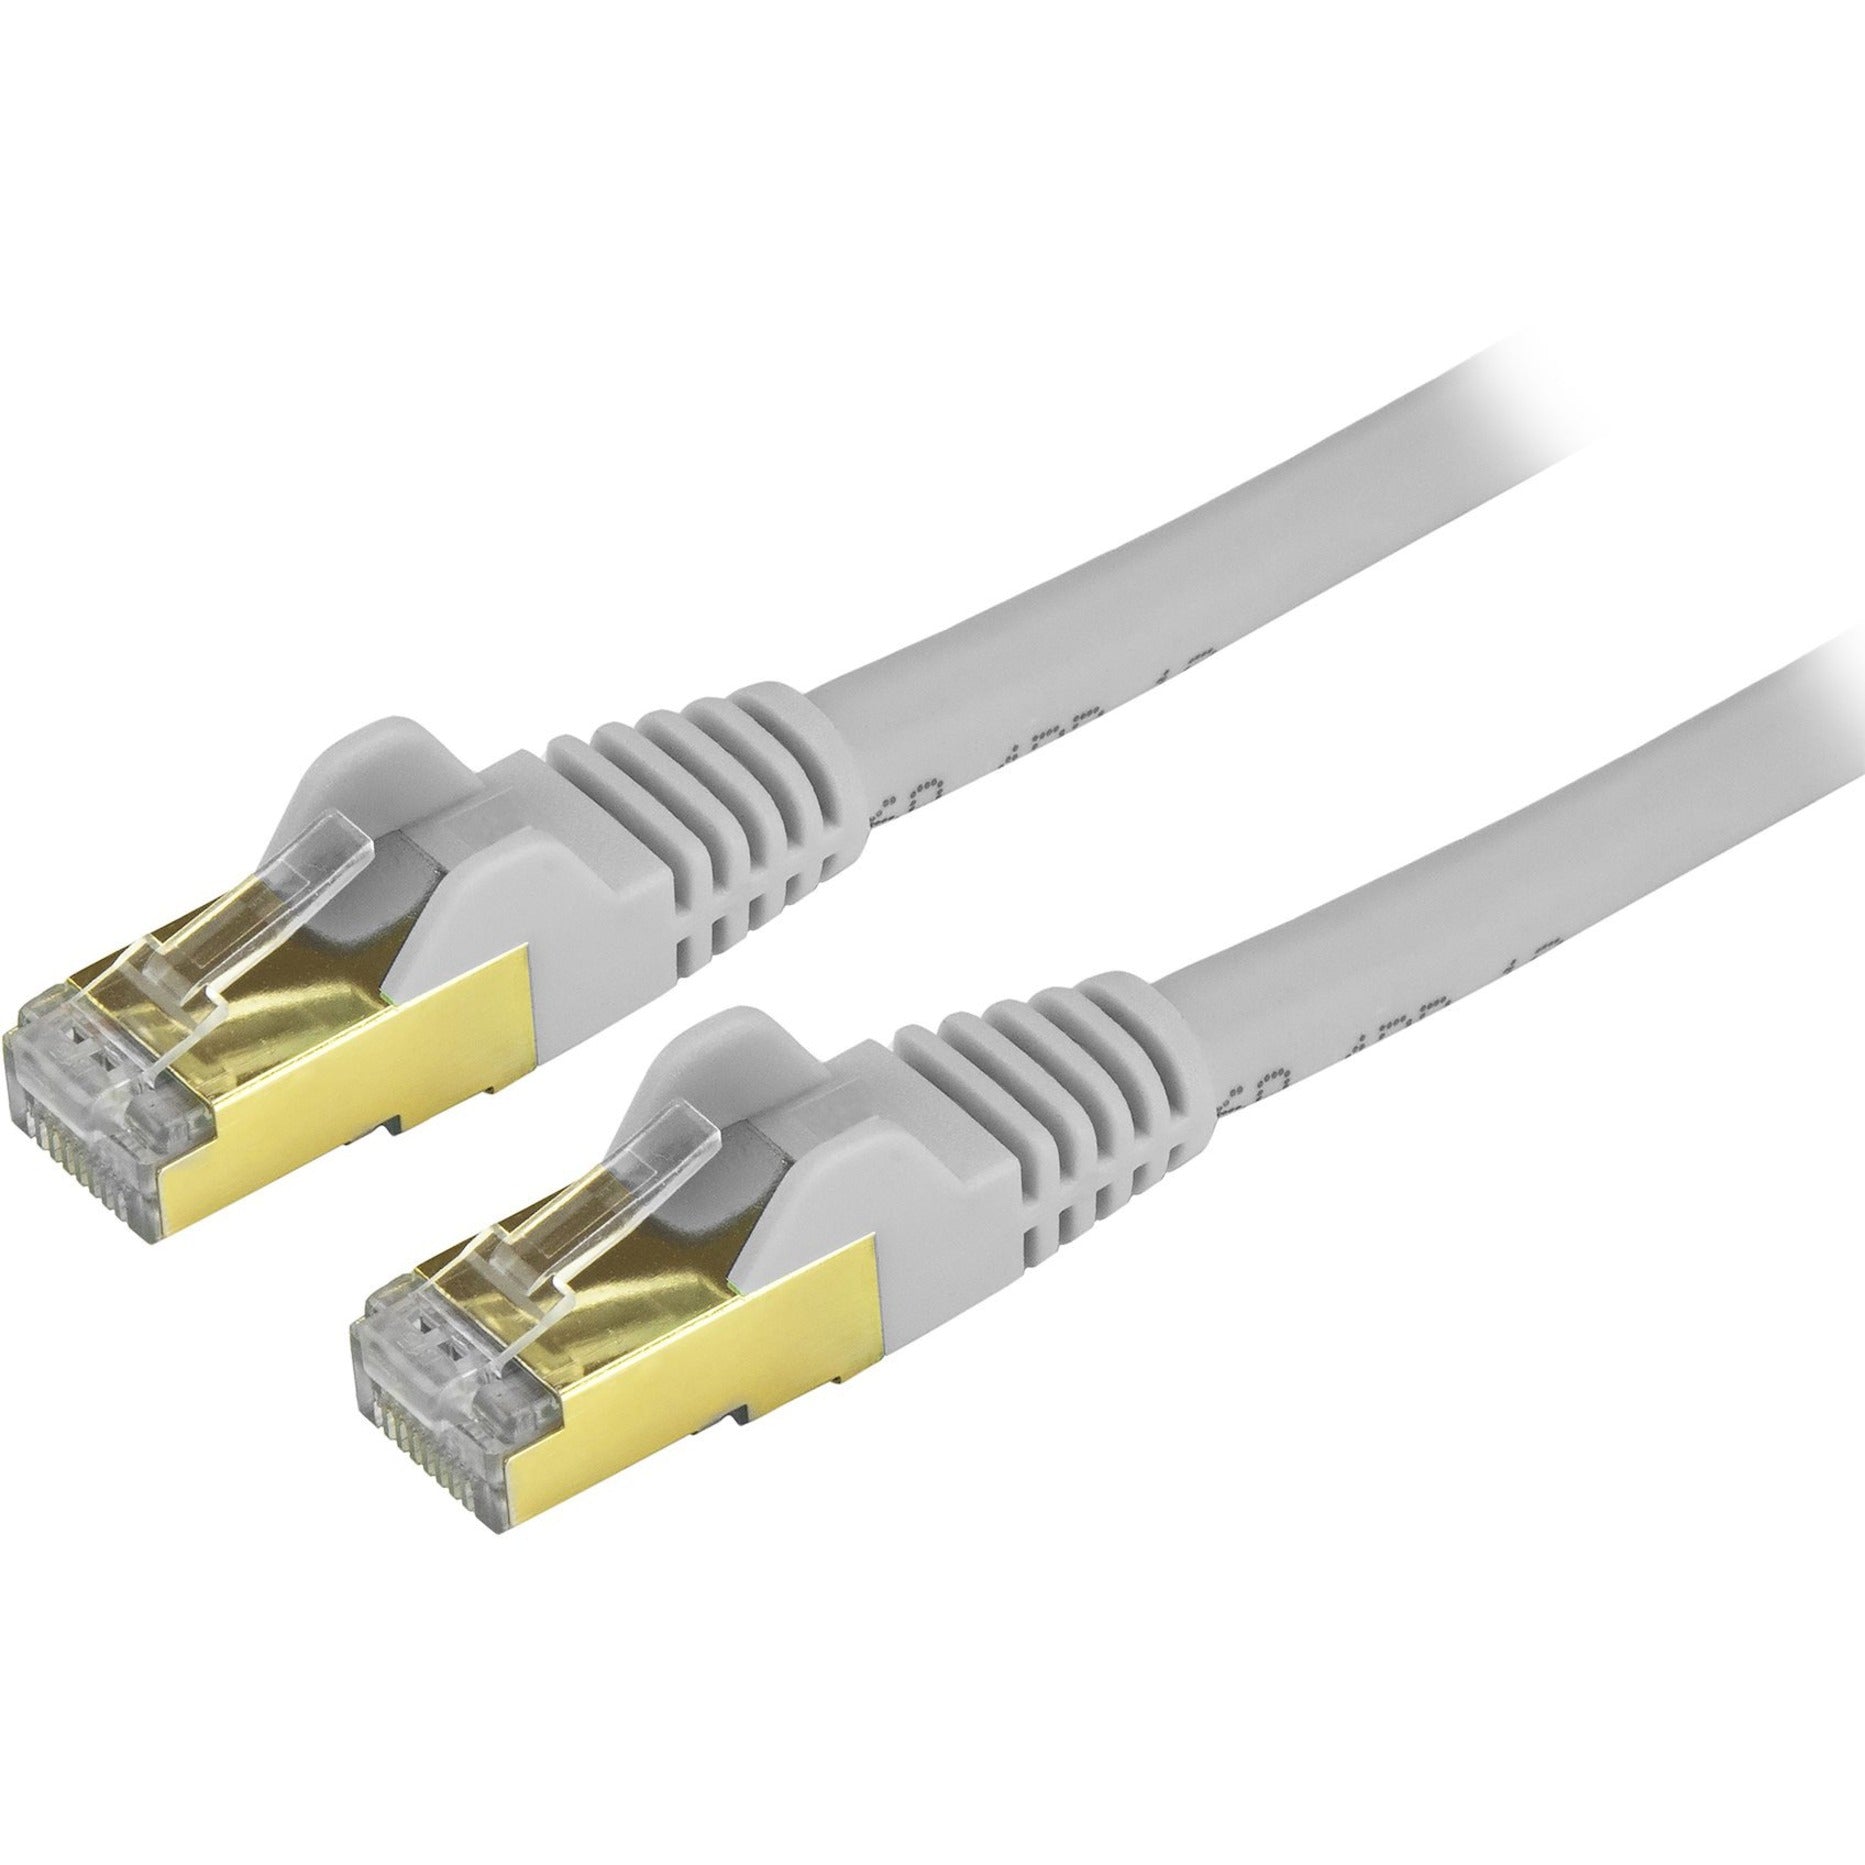 StarTech.com C6ASPAT30GR Cat6a Ethernet Patch Cable - Shielded (STP) - 30 ft. Gray Long Ethernet Cord  StarTech.com C6ASPAT30GR Cordon de patch Ethernet Cat6a - Blindé (STP)  - 30 pi. Gris Câble Ethernet long